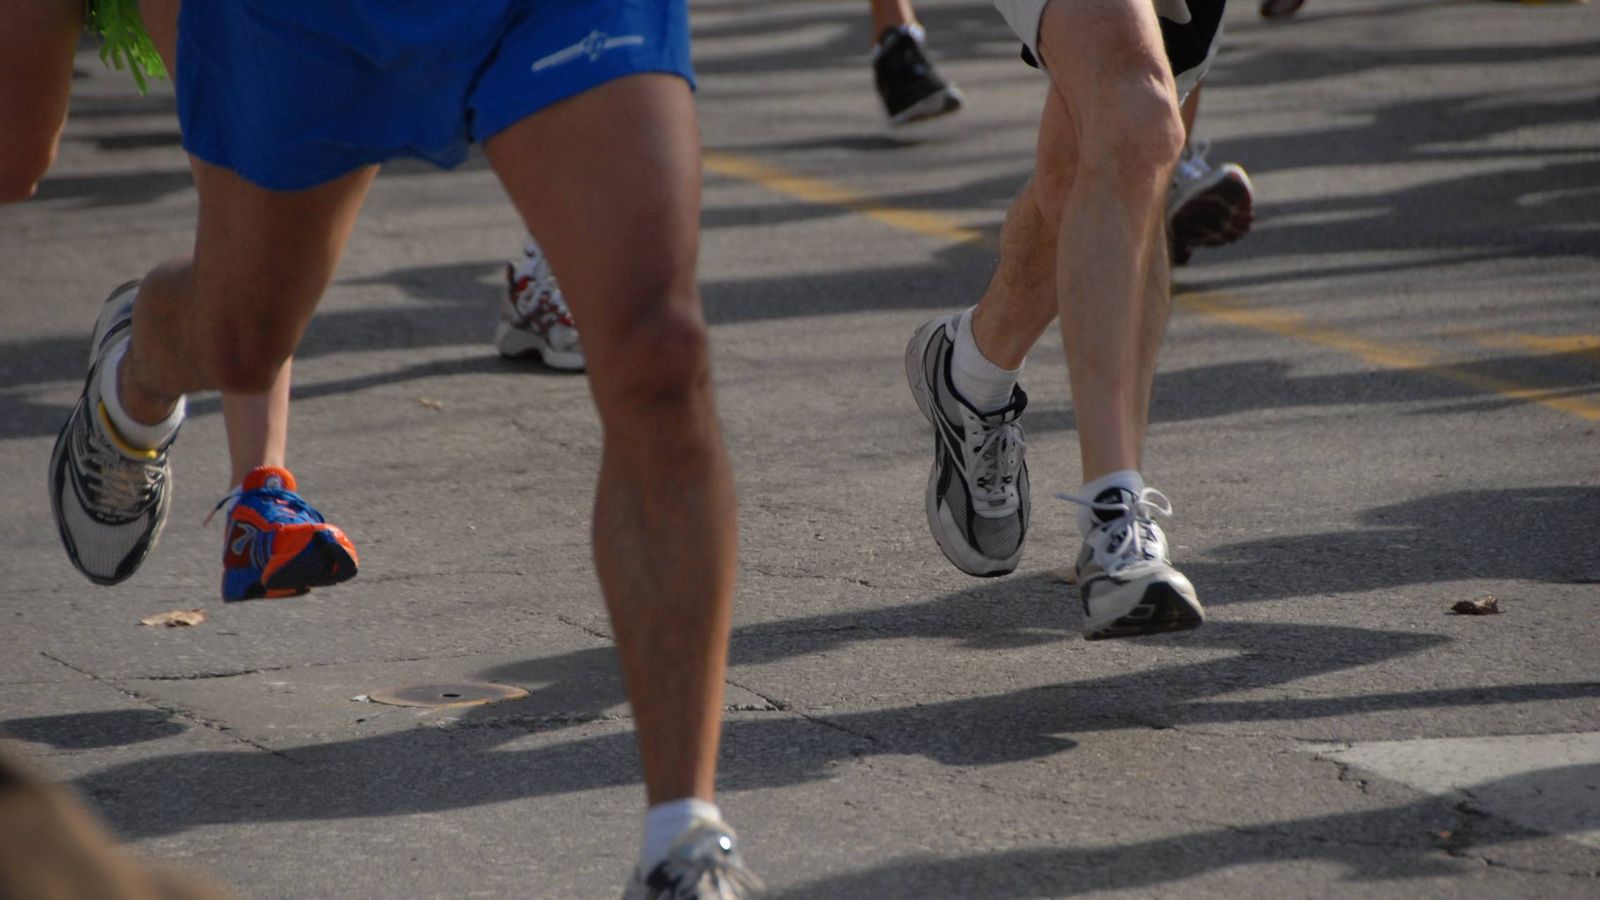 Foto: Varios corredores, durante una prueba de running (Creative Commons - Flickr/Ryan Knapp).